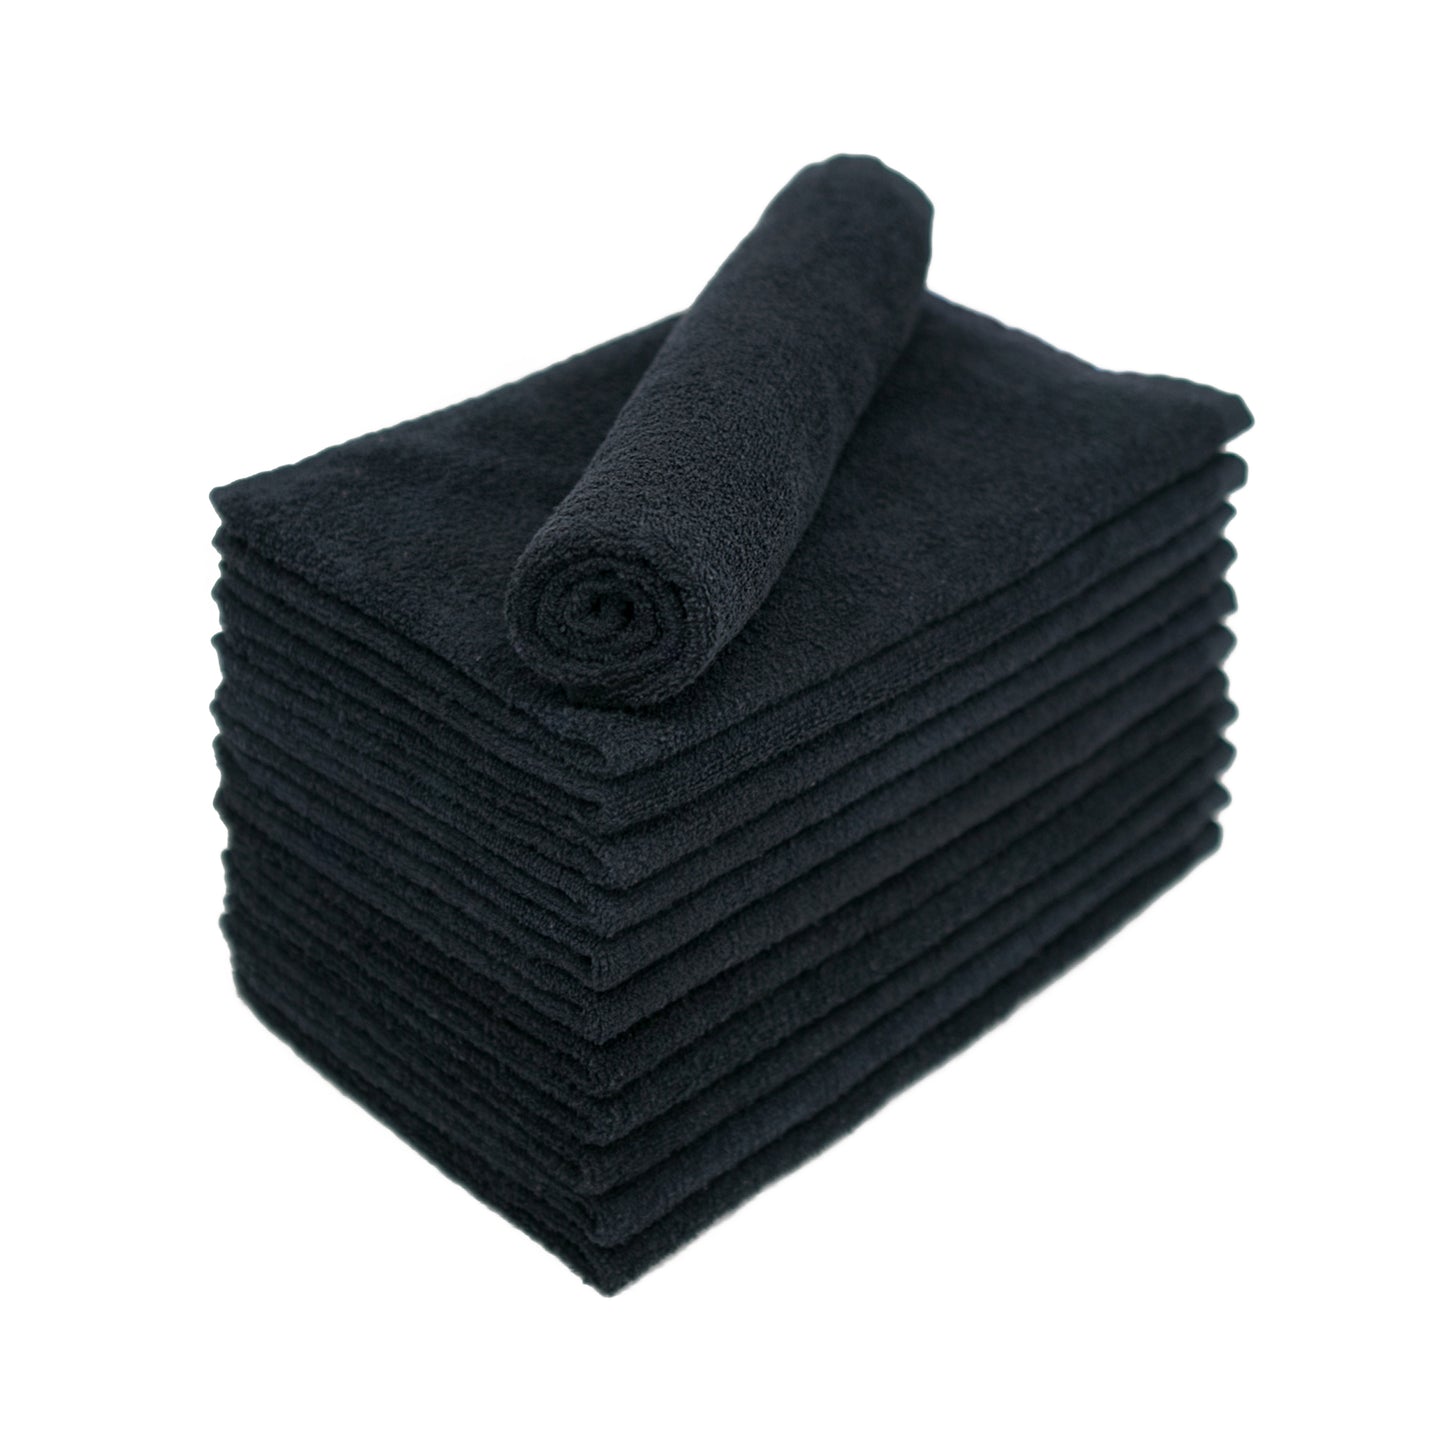 Black Bleach Proof Salon Towels 15" x 26"